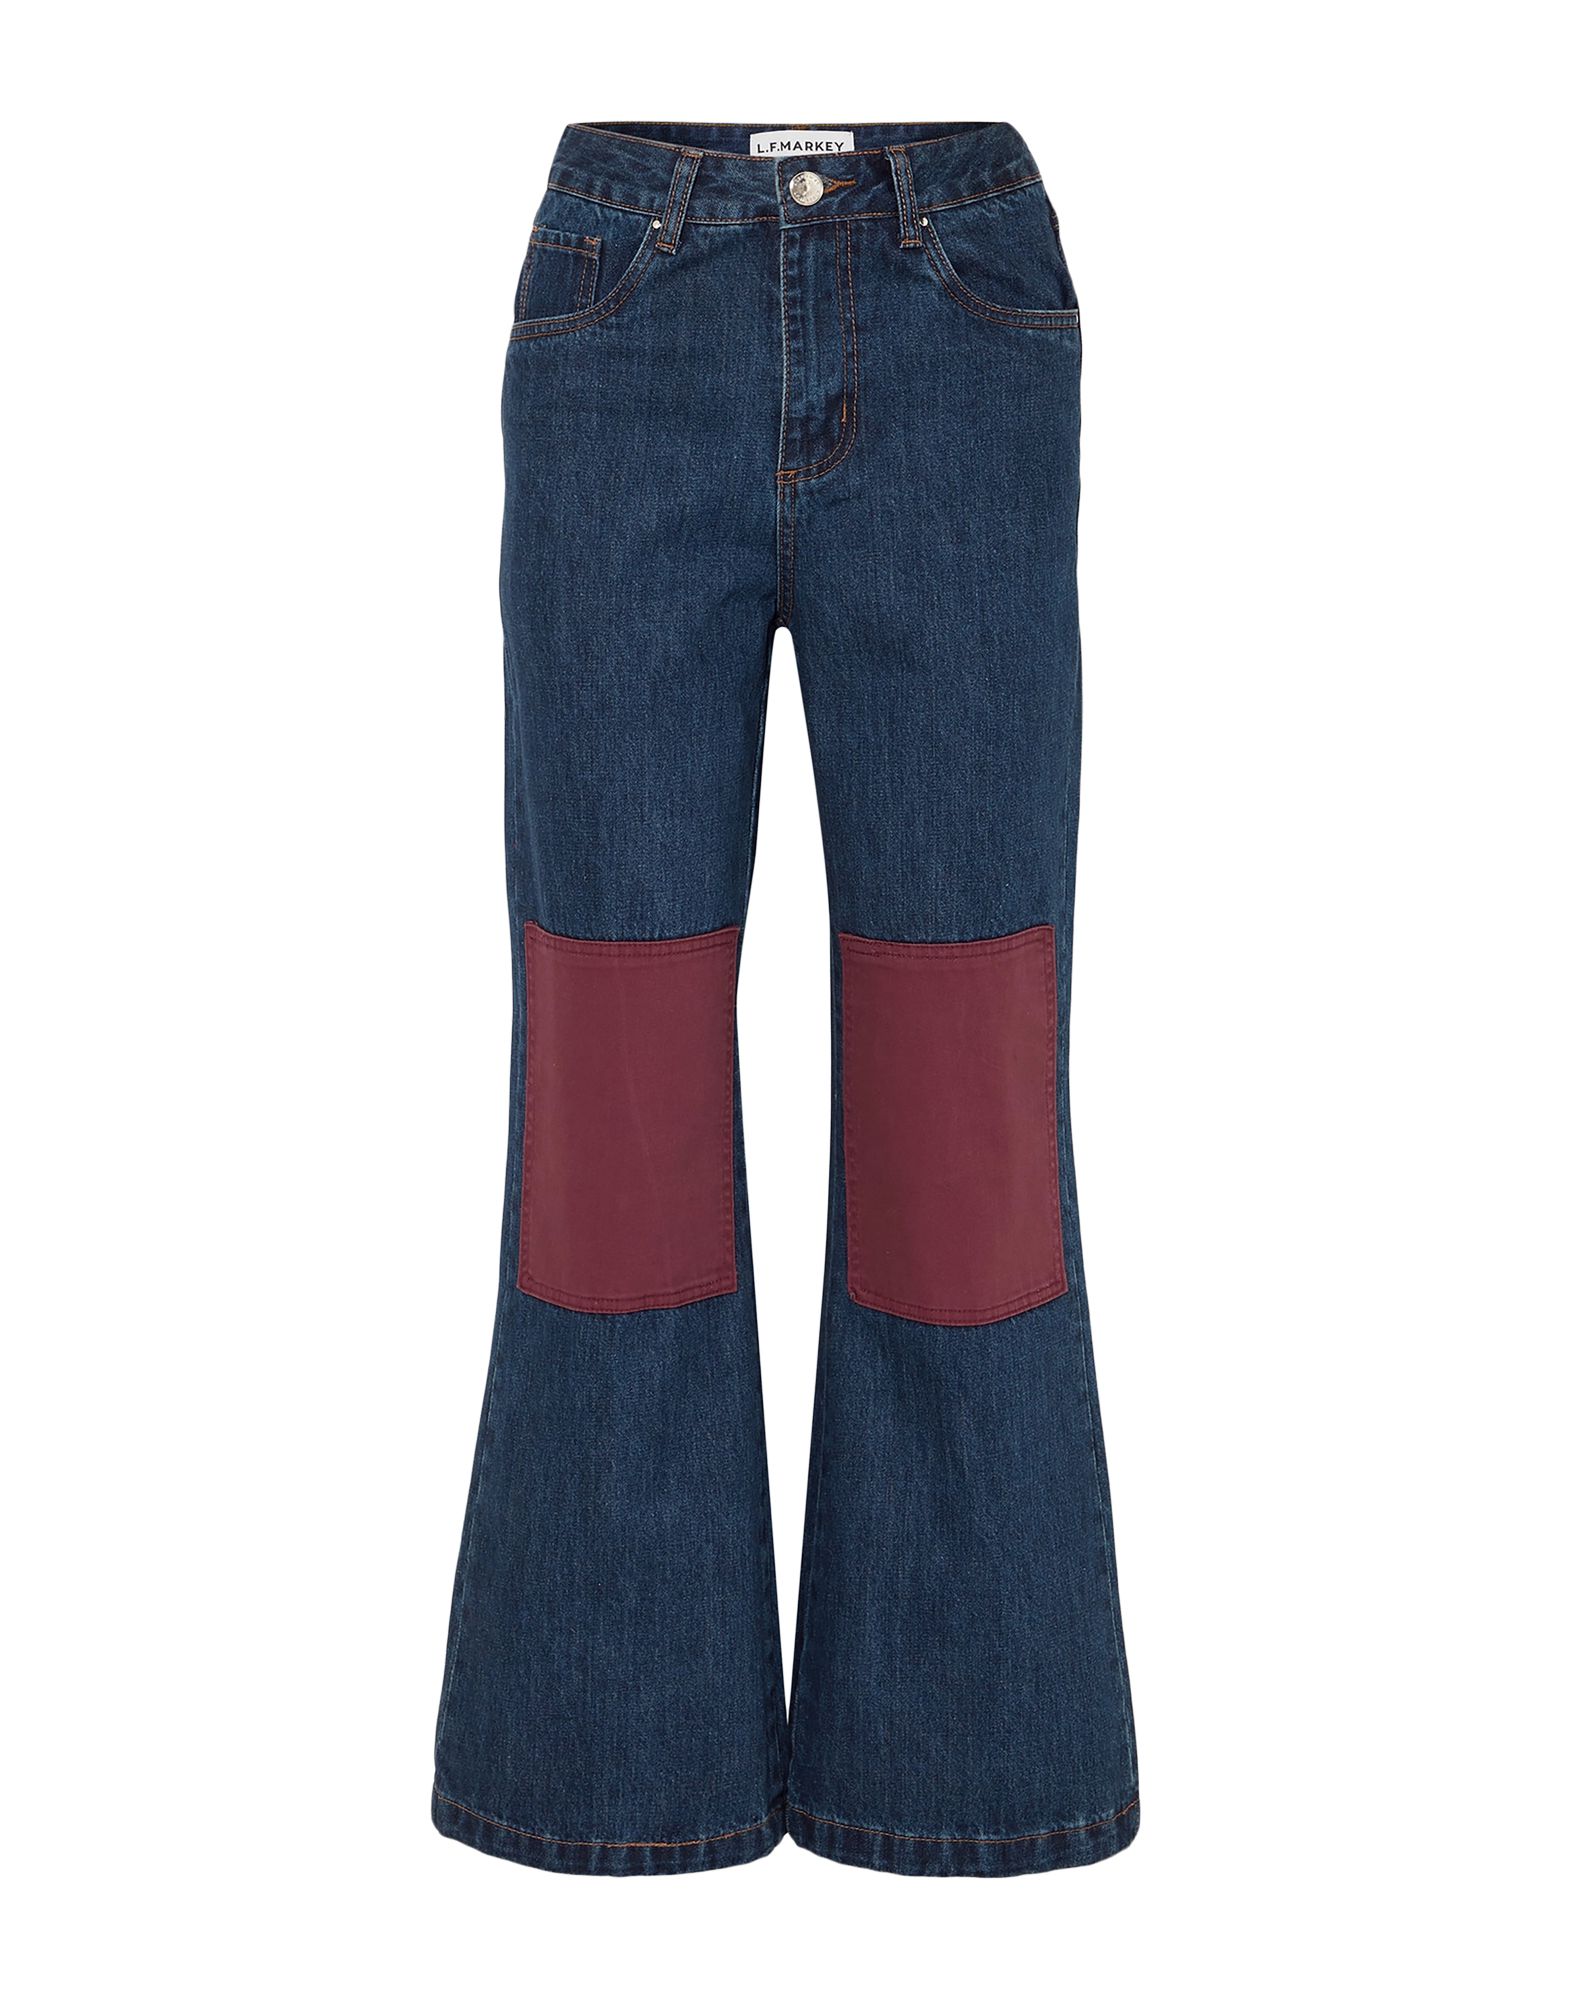 L.F. MARKEY Jeans